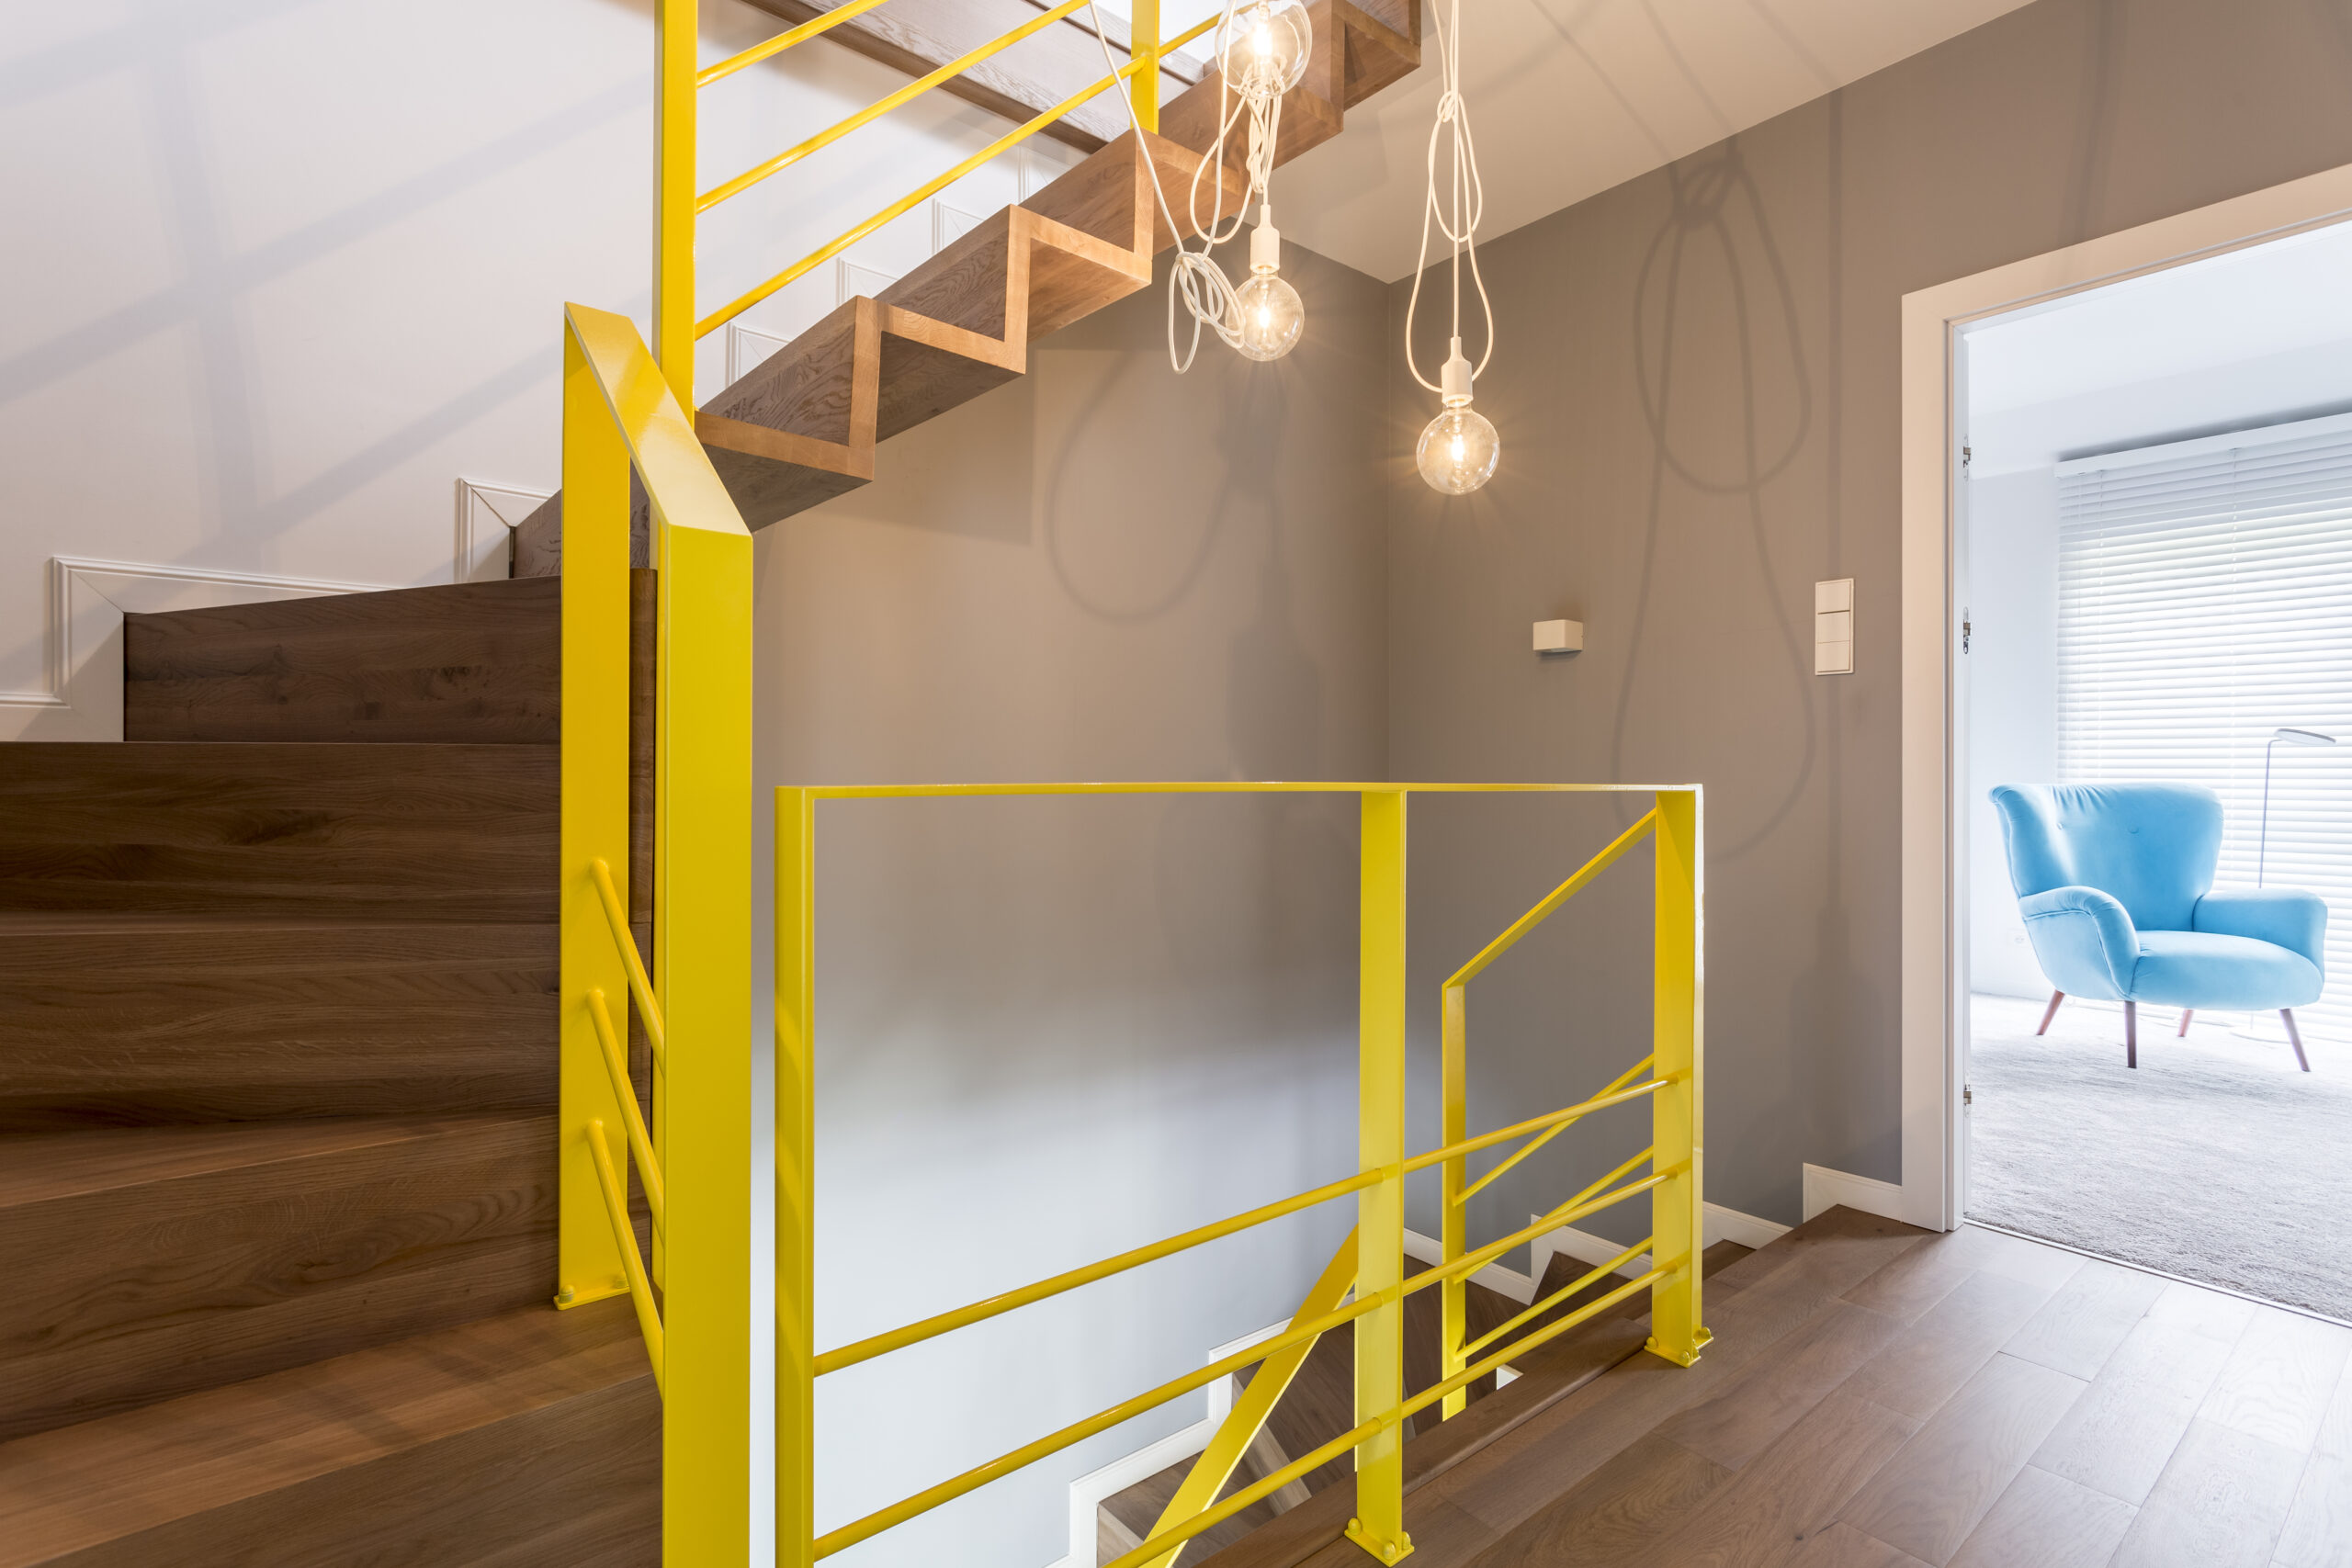 Stepenice u boji vredne divljenja: 5 ideja za očaravajući dizajn